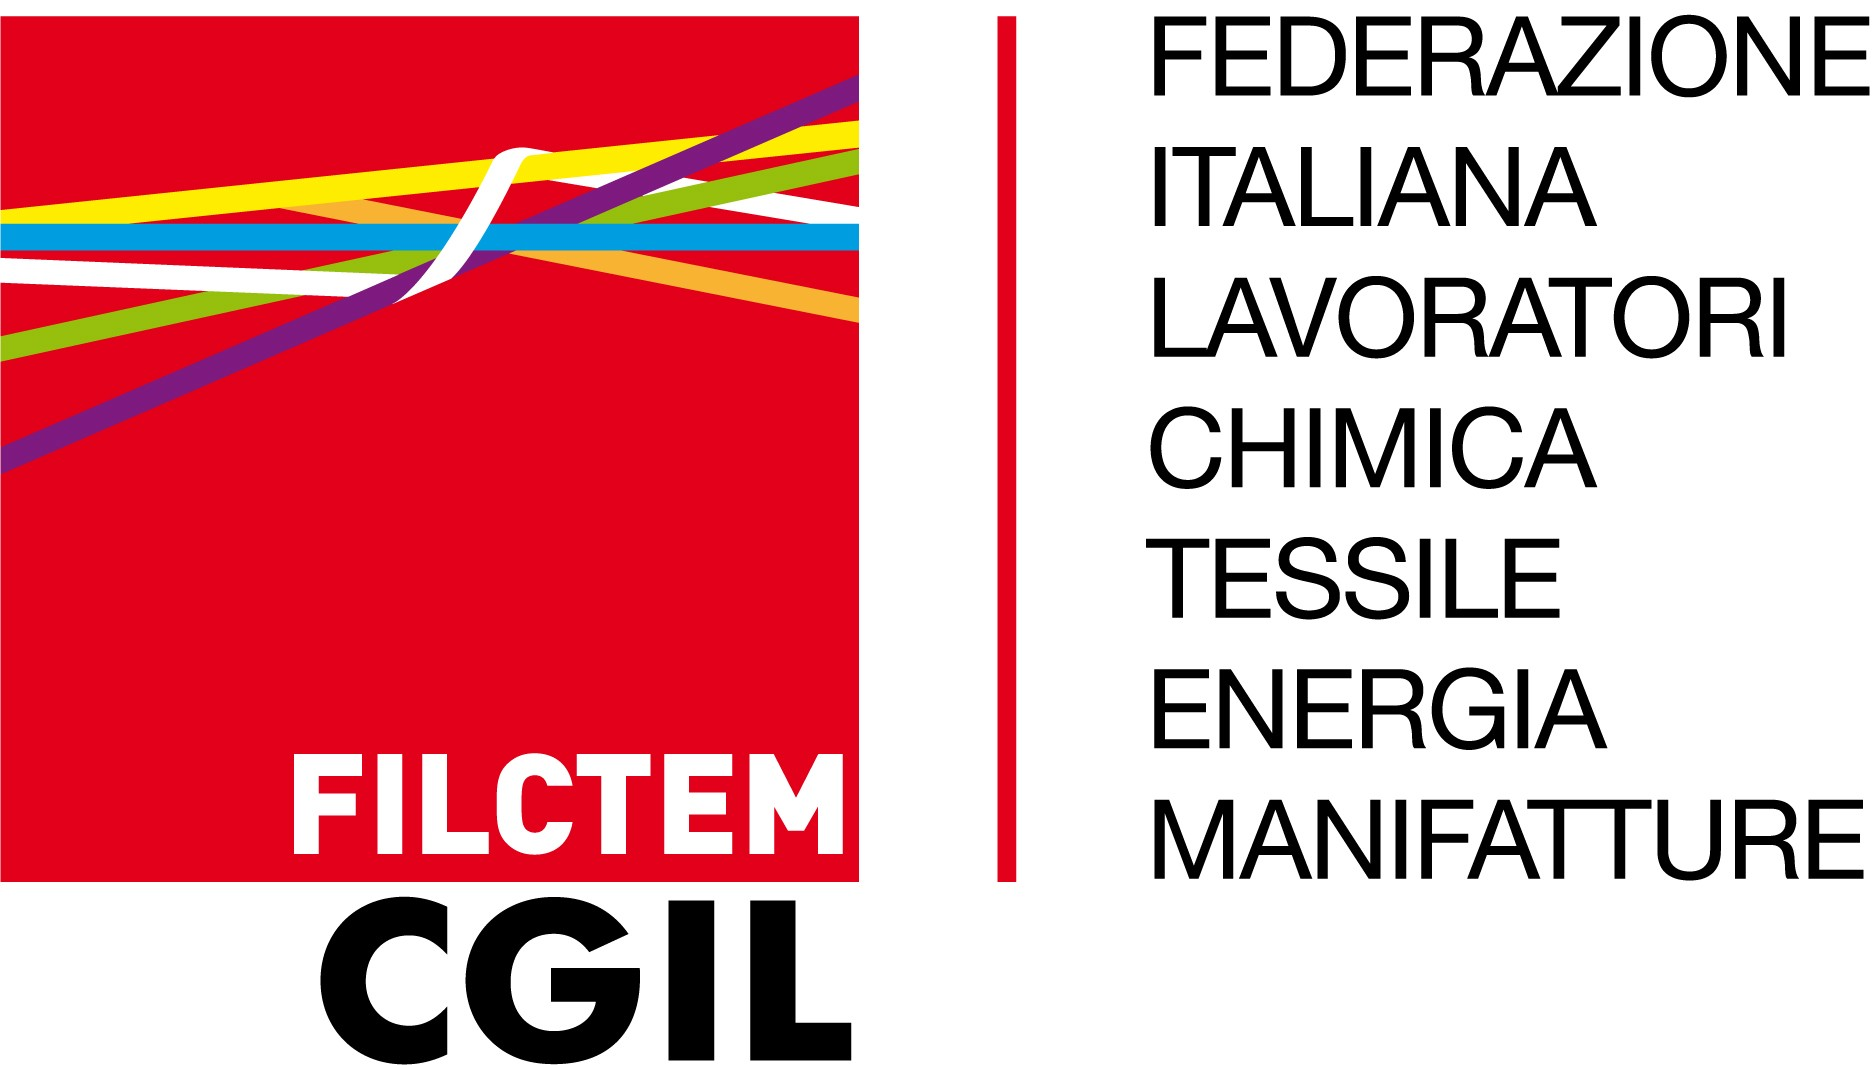 100413/144 La piattaforma Filctem-Cgil per il rinnovo del contratto nazionale per le attività minerarie 1 aprile 2010 31 marzo 2013 FEDERAZIONE ITALIANA LAVORATORI CHIMICA ENERGIA MANIFATTURE 1)